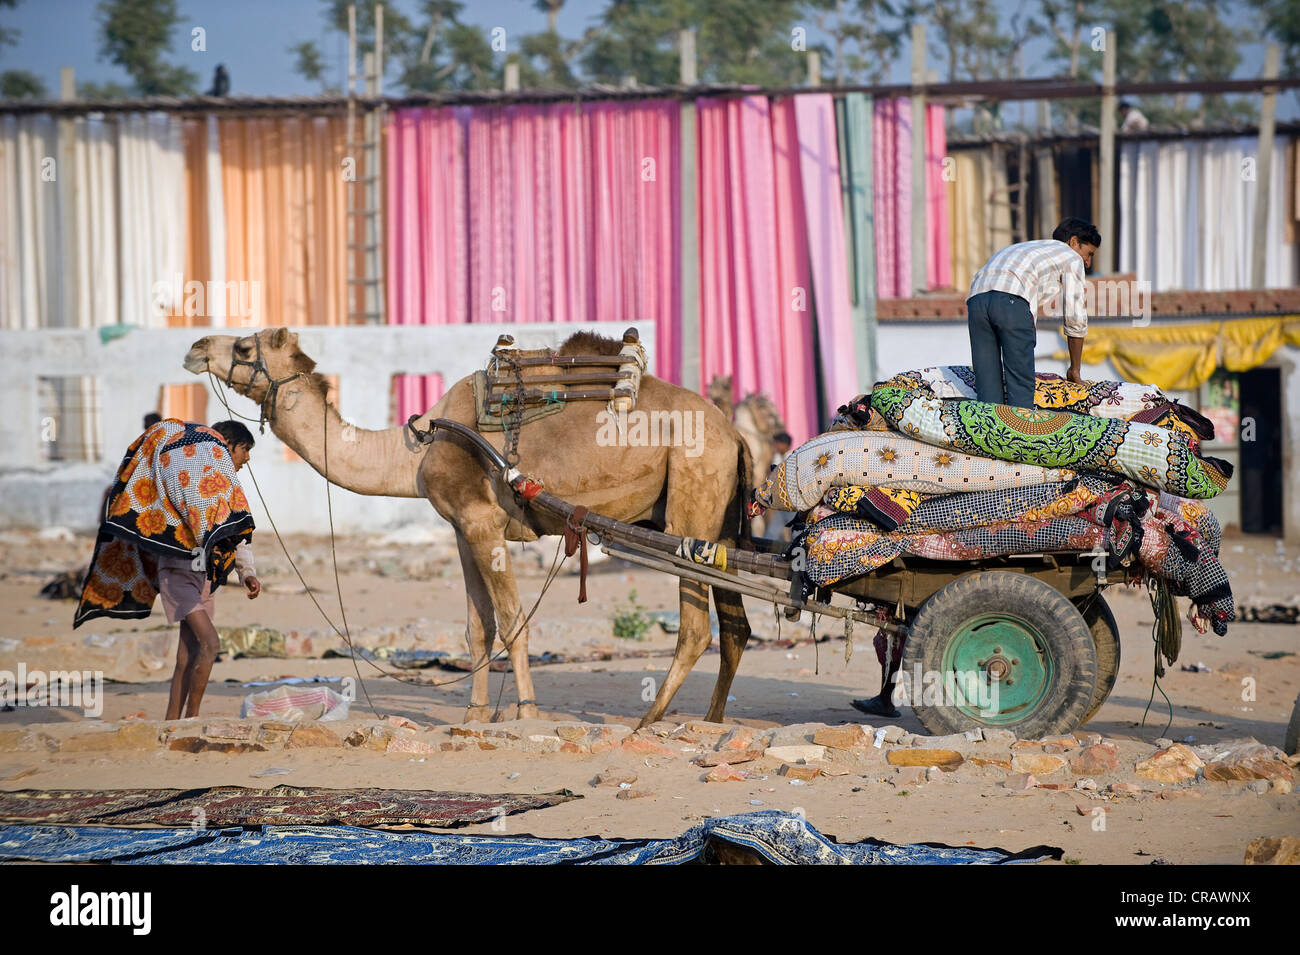 Camel tirant un chariot à roues à deux en face de tissu teint, la teinture de Sanganer près de Jaipur, Rajasthan, Inde, Asie Banque D'Images